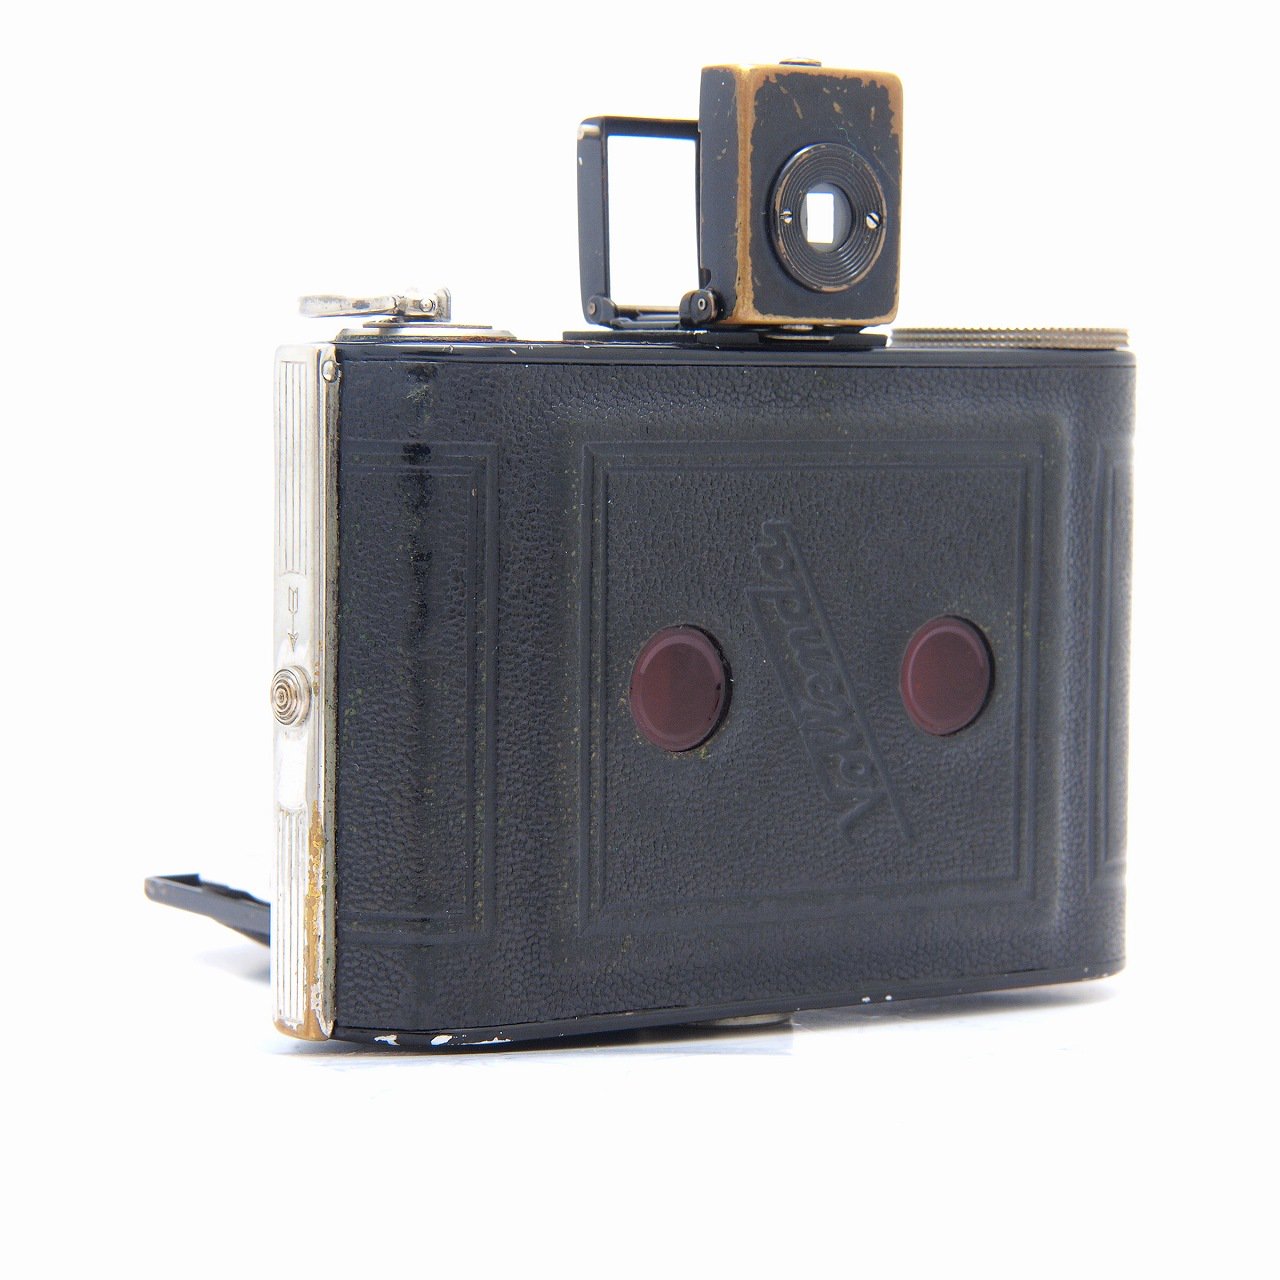 コダック社のアンティークの(蛇腹)カメラです - フィルムカメラ